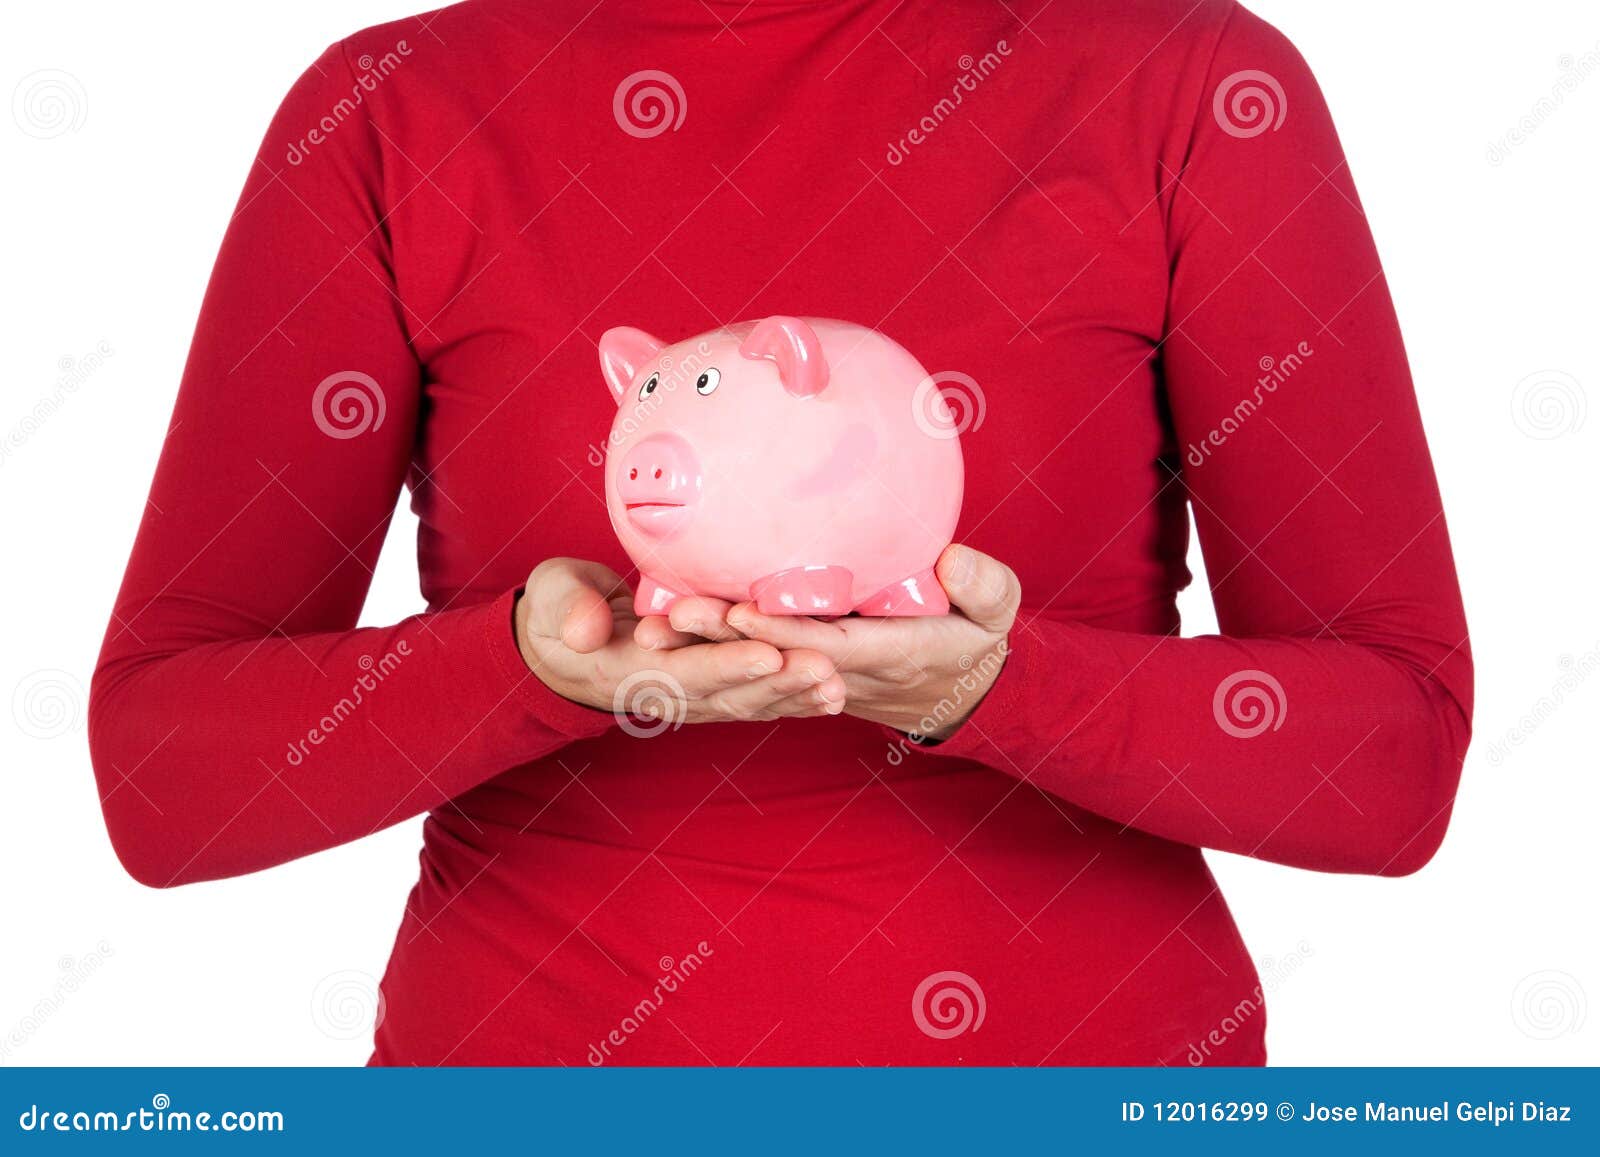 Pessoa no vermelho com um banco piggy nas mãos isoladas no branco